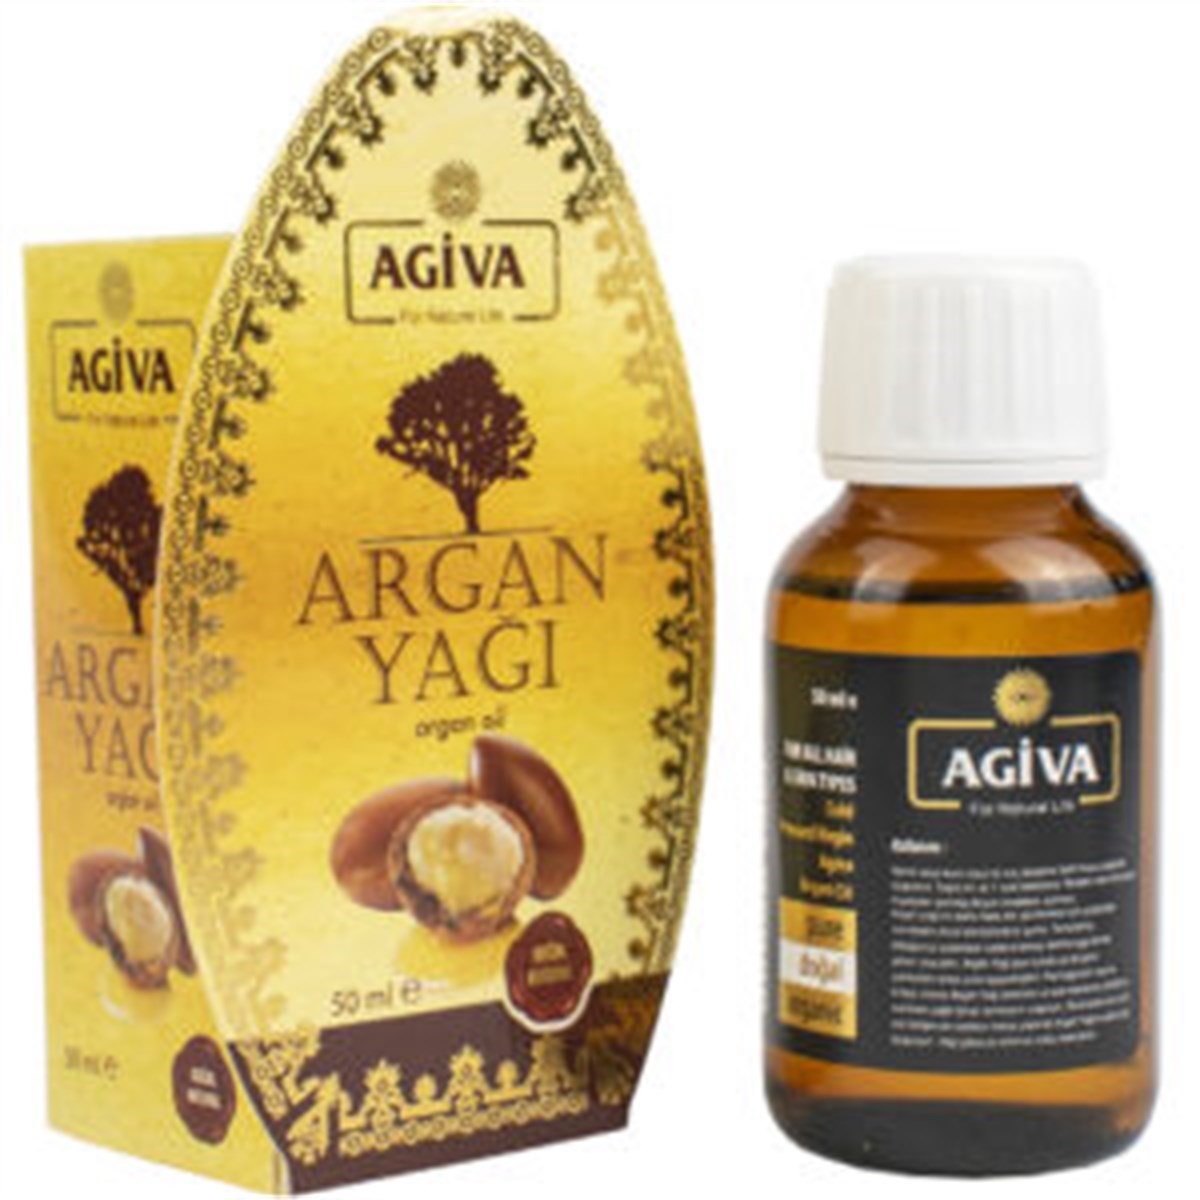 Agiva Argan Yağı 50 ml | Dermolist.com | 0(312)9119949